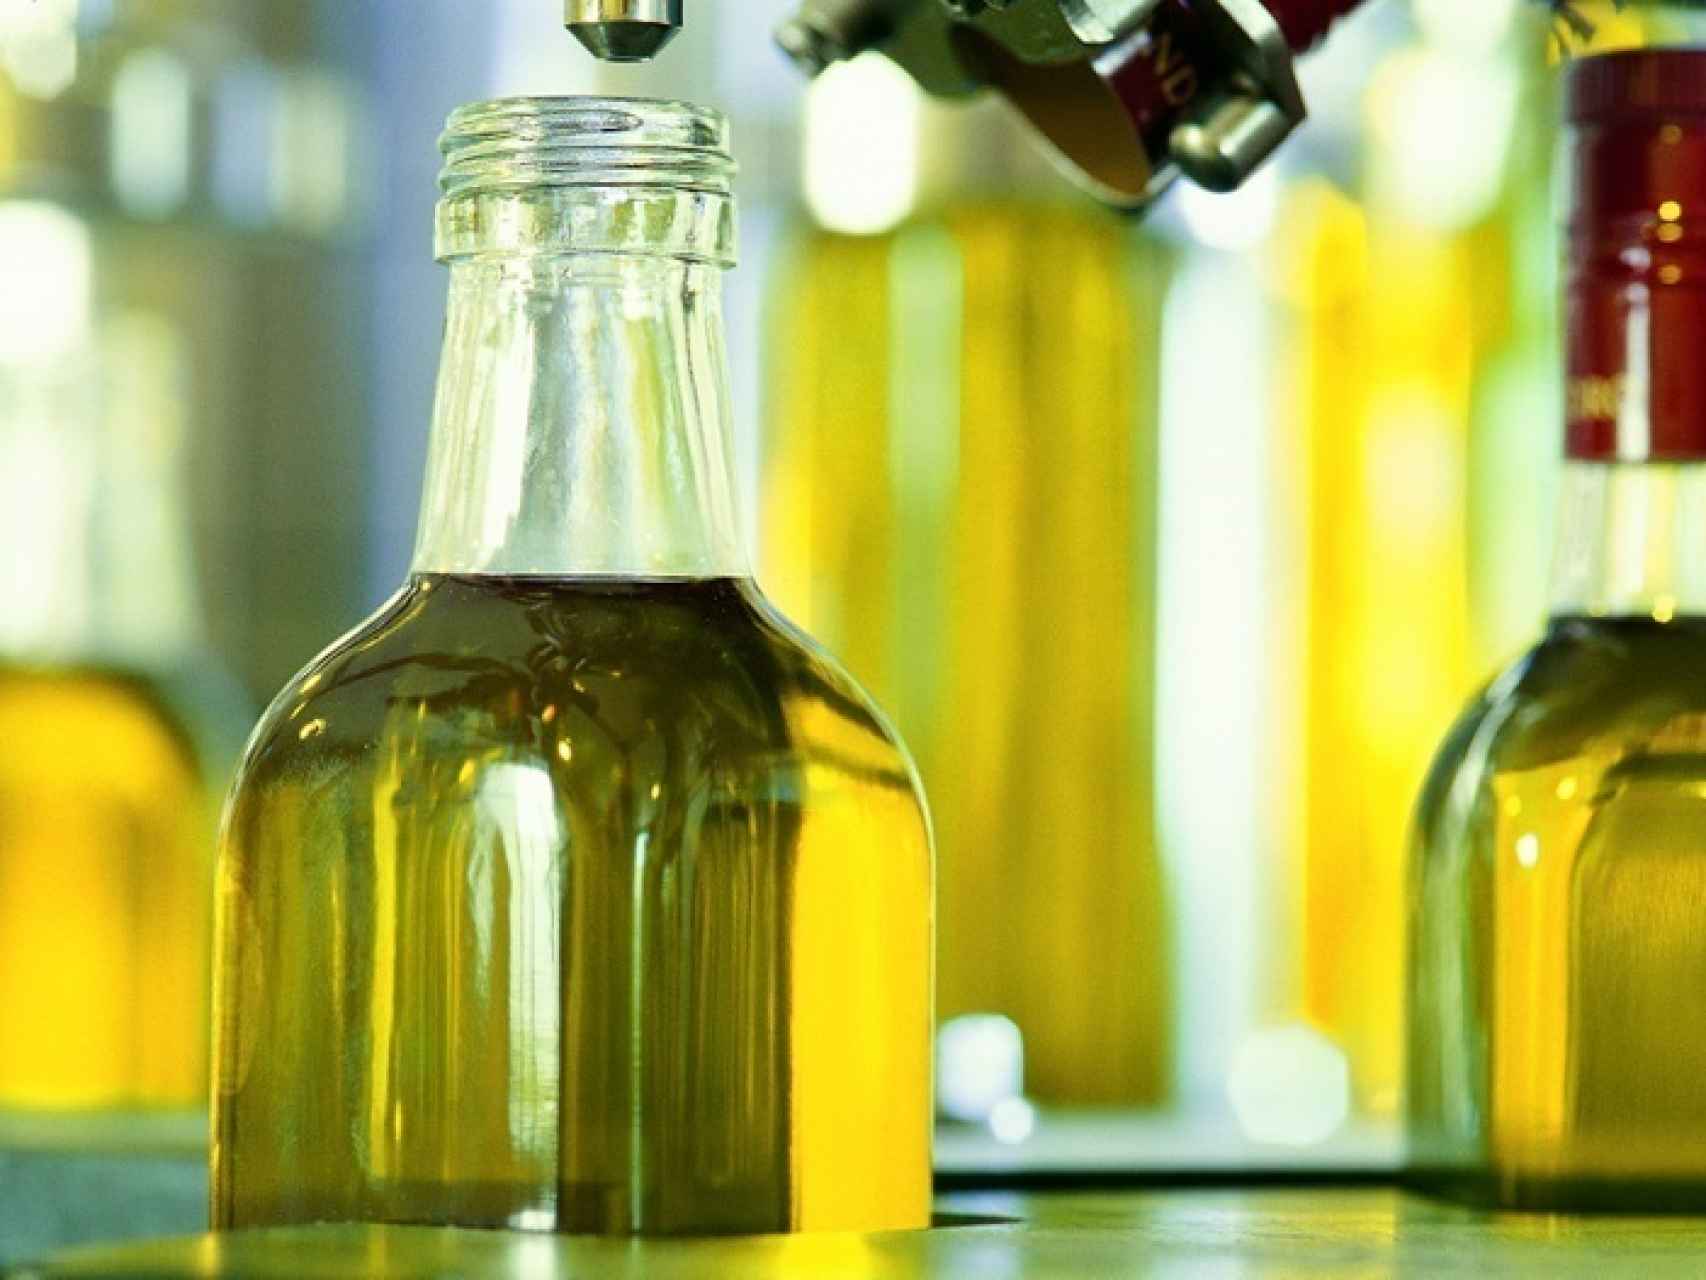 Imagen de archivo de aceiteras con aceite de oliva.